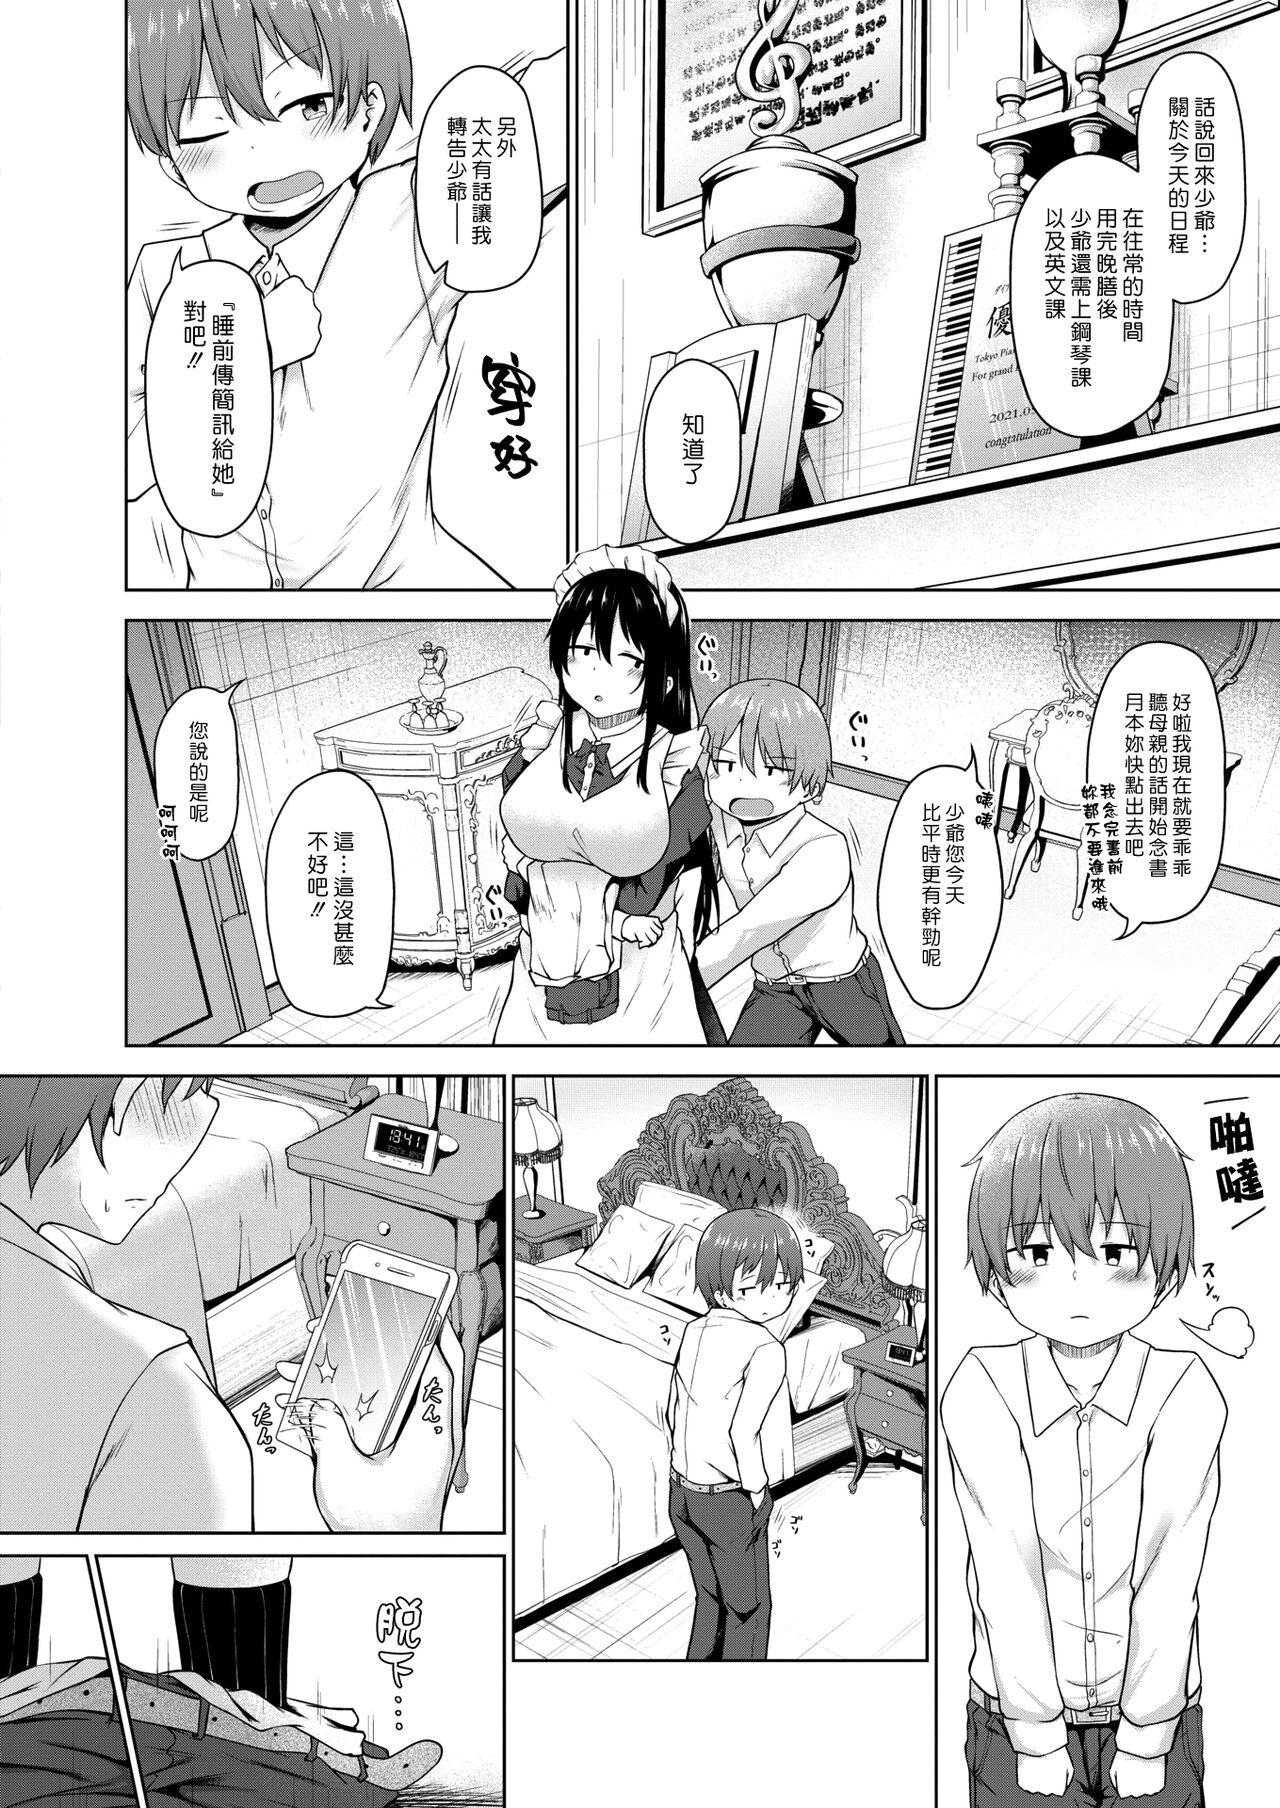 Chaturbate Ichizu | 專情 Gay Uncut - Page 2